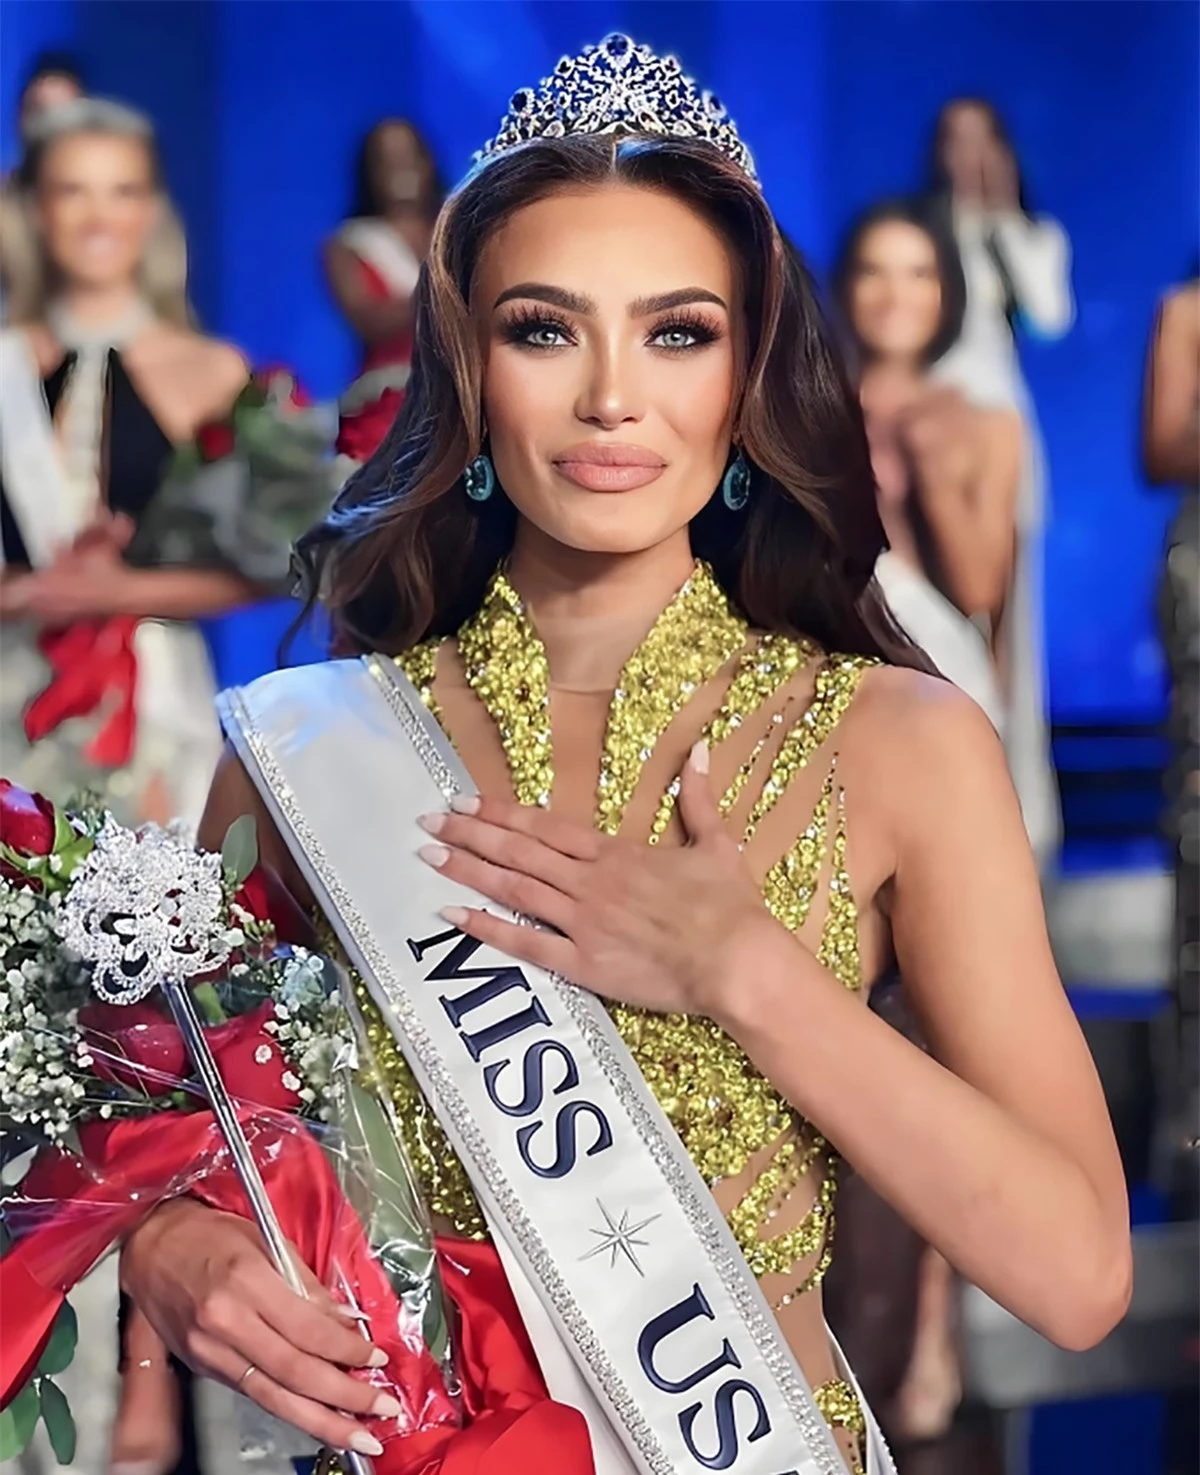 Nhan sắc người đẹp gốc Venezuela đăng quang Hoa hậu Mỹ ảnh 1